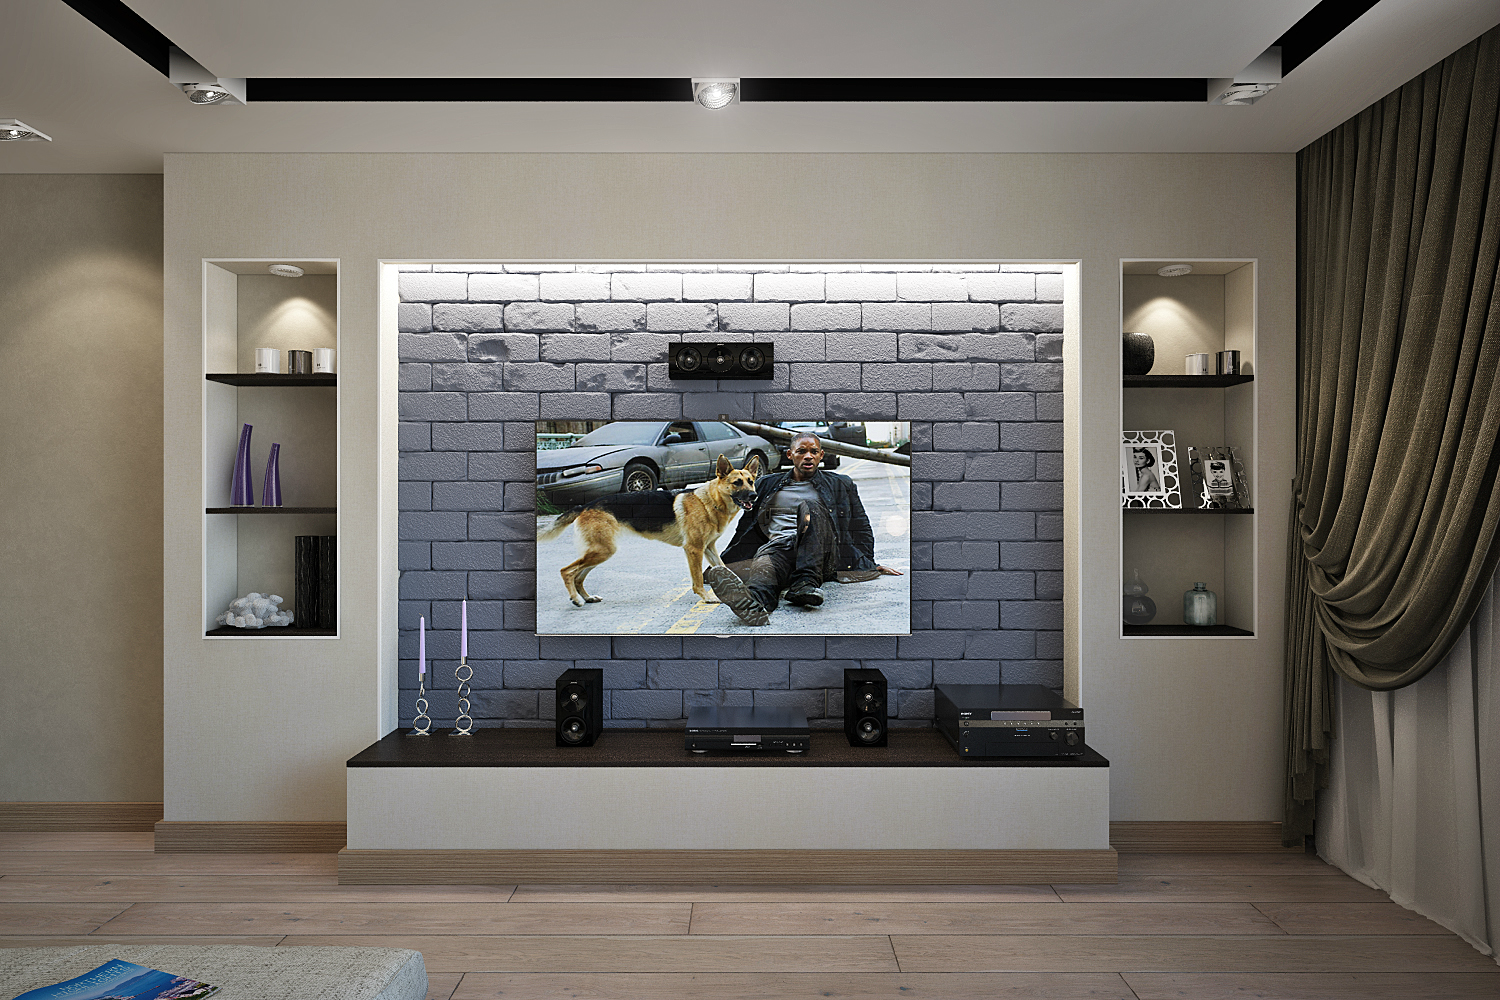 Стены из гипсокартона - дизайн 3d в зале с подсветкой или без, красивые полукруглые формы над окном или дверным проемом, варианты декорирования